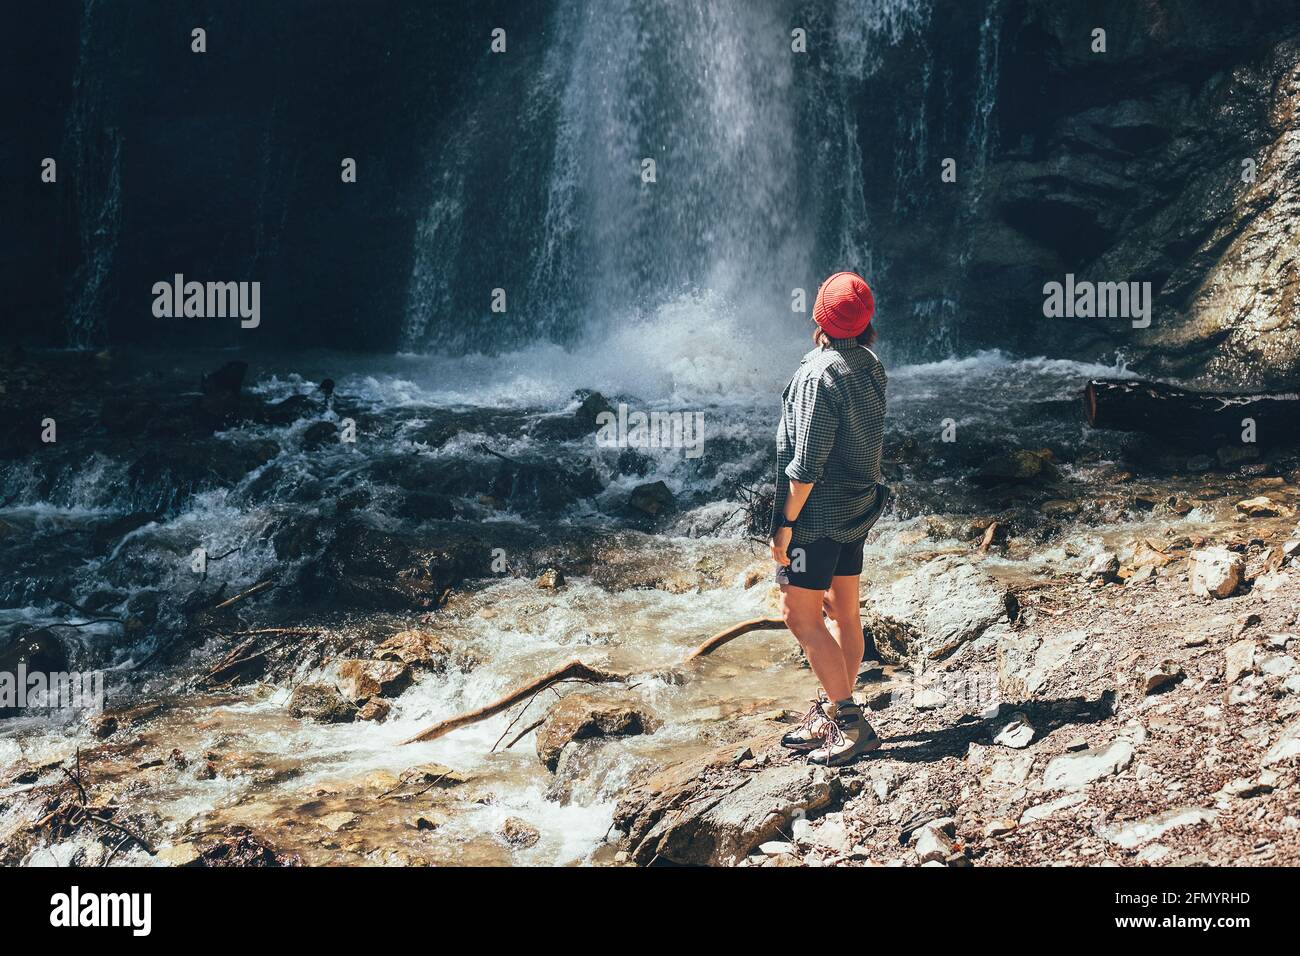 Frau gekleidet aktive Trekking-Kleidung in der Nähe des Gebirgswasserfalls und genießen Sie die spritzende Natur Kraft. Reisen, Trekking und Natu Stockfoto